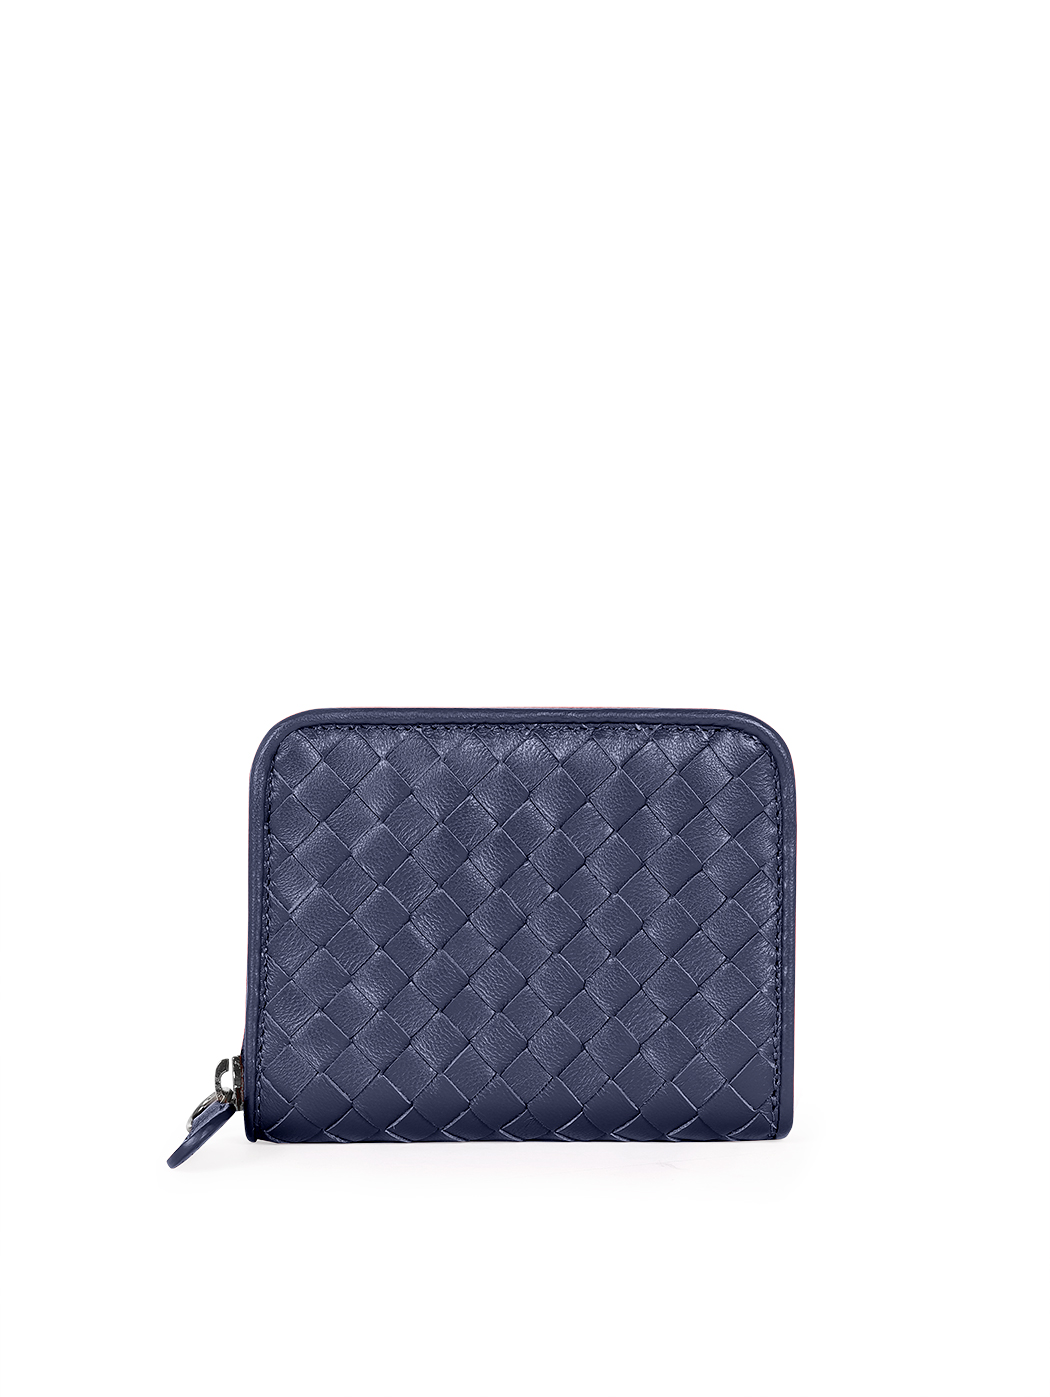 浅蓝色编织皮革紧凑型拉链钱包